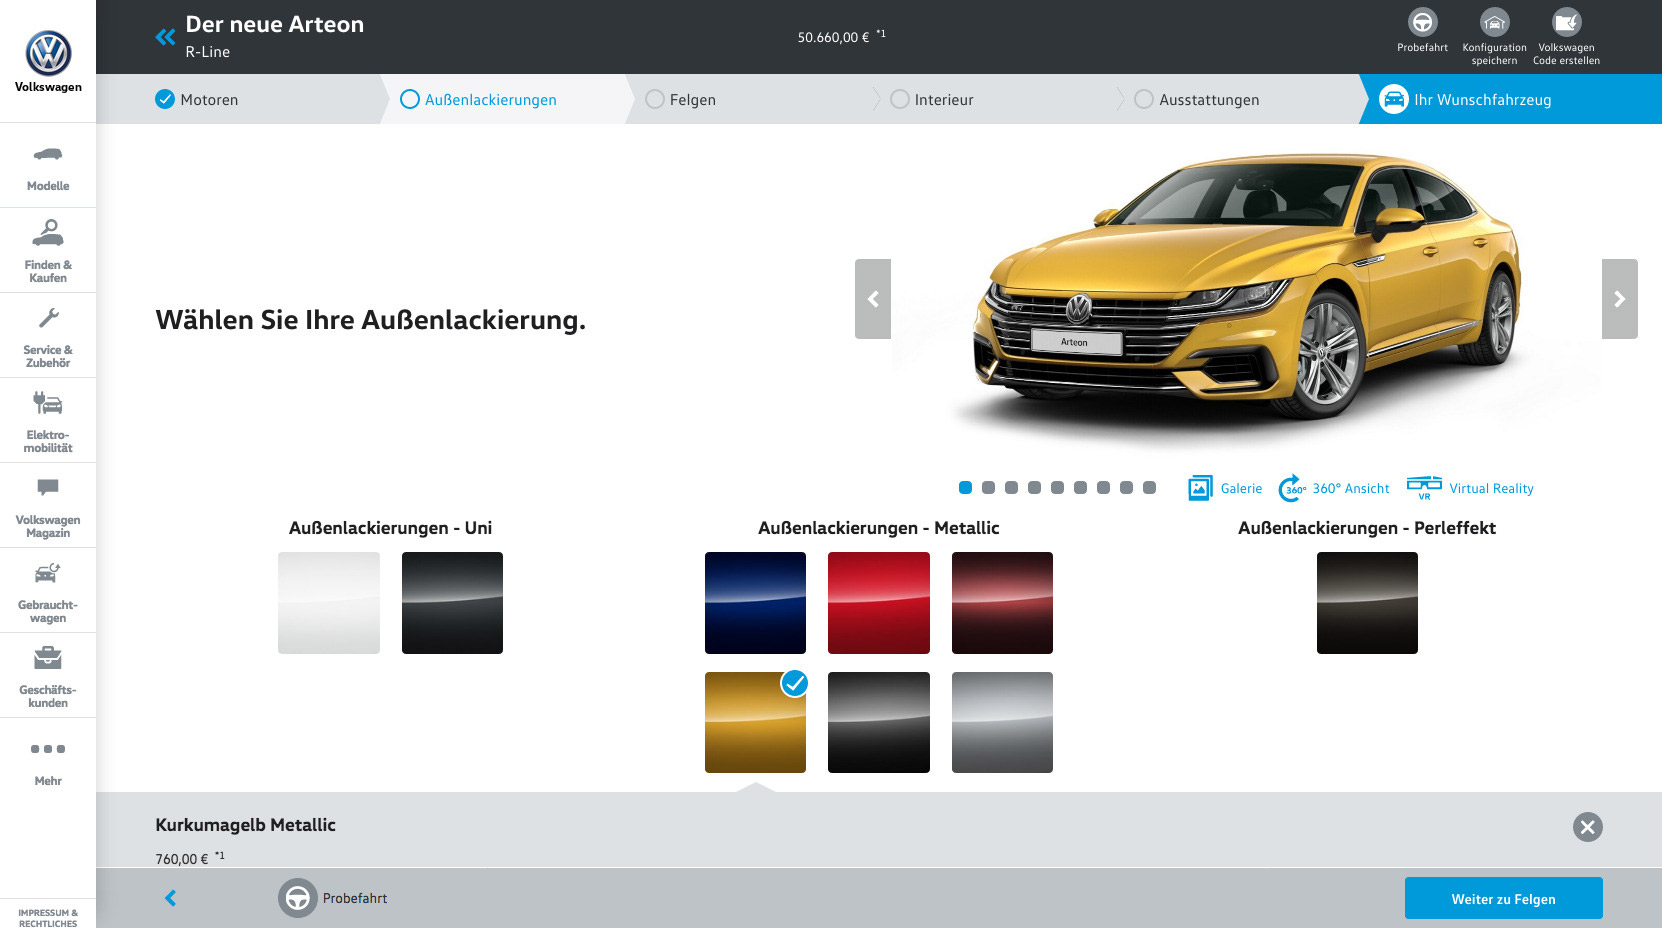 Volkswagen Deutschland Konfigurator im Web Design 5.0